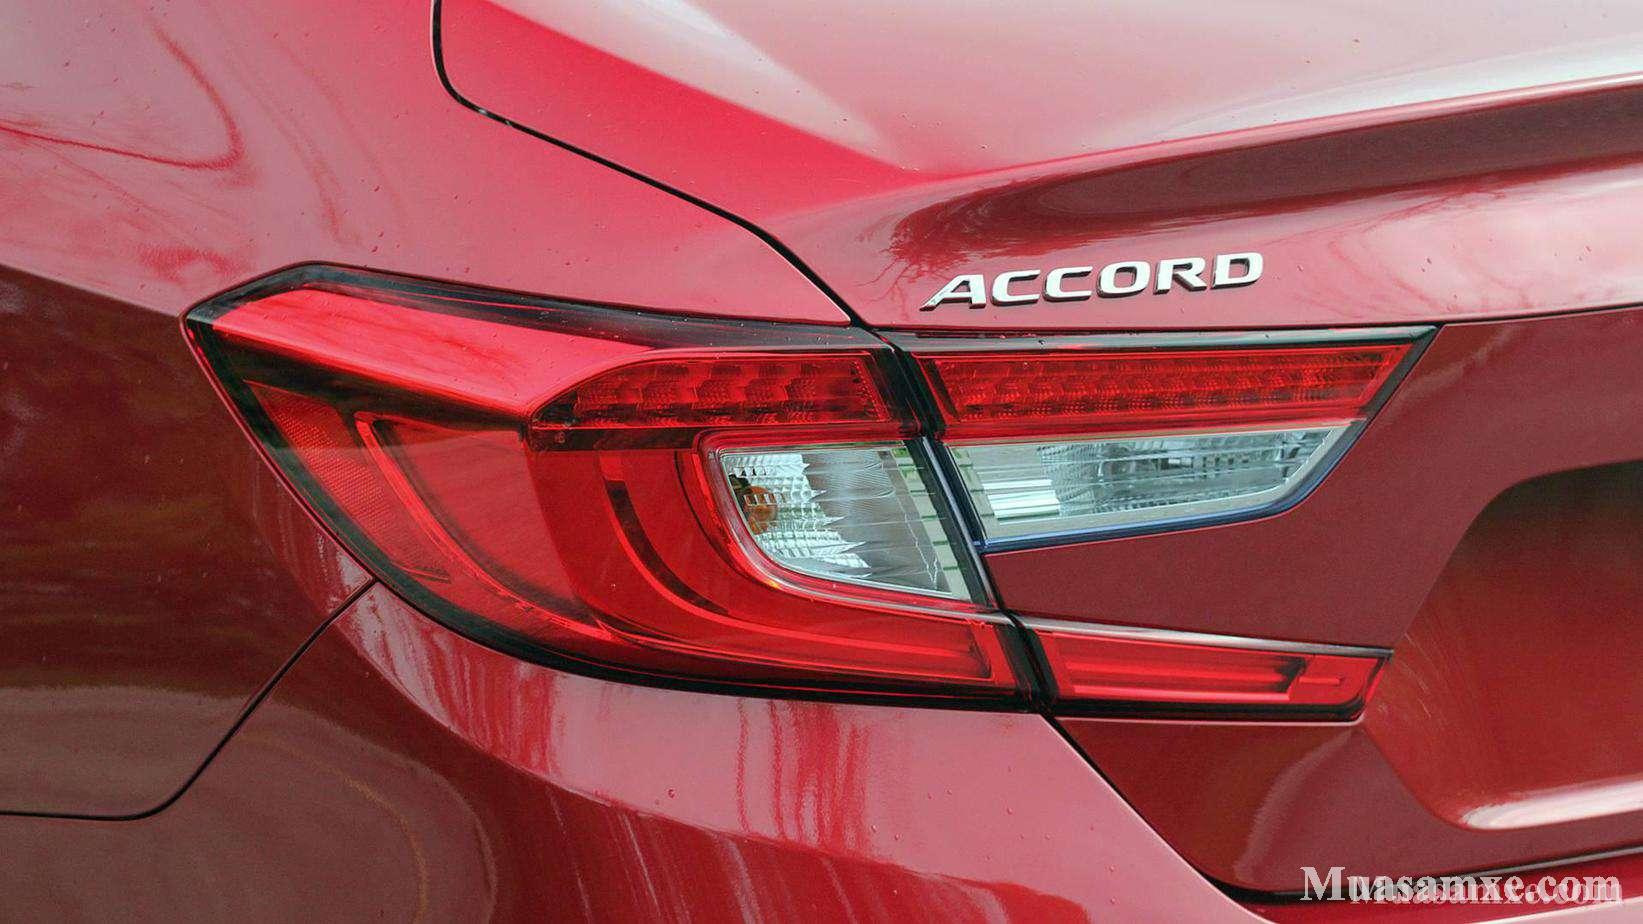 Accord Hybrid, Honda Accord Hybrid, Honda Accord Hybrid 2019, Honda Accord, Honda Accord 2018, Honda Accord 2019, 2019 Honda Accord, Sedan, phân khúc D